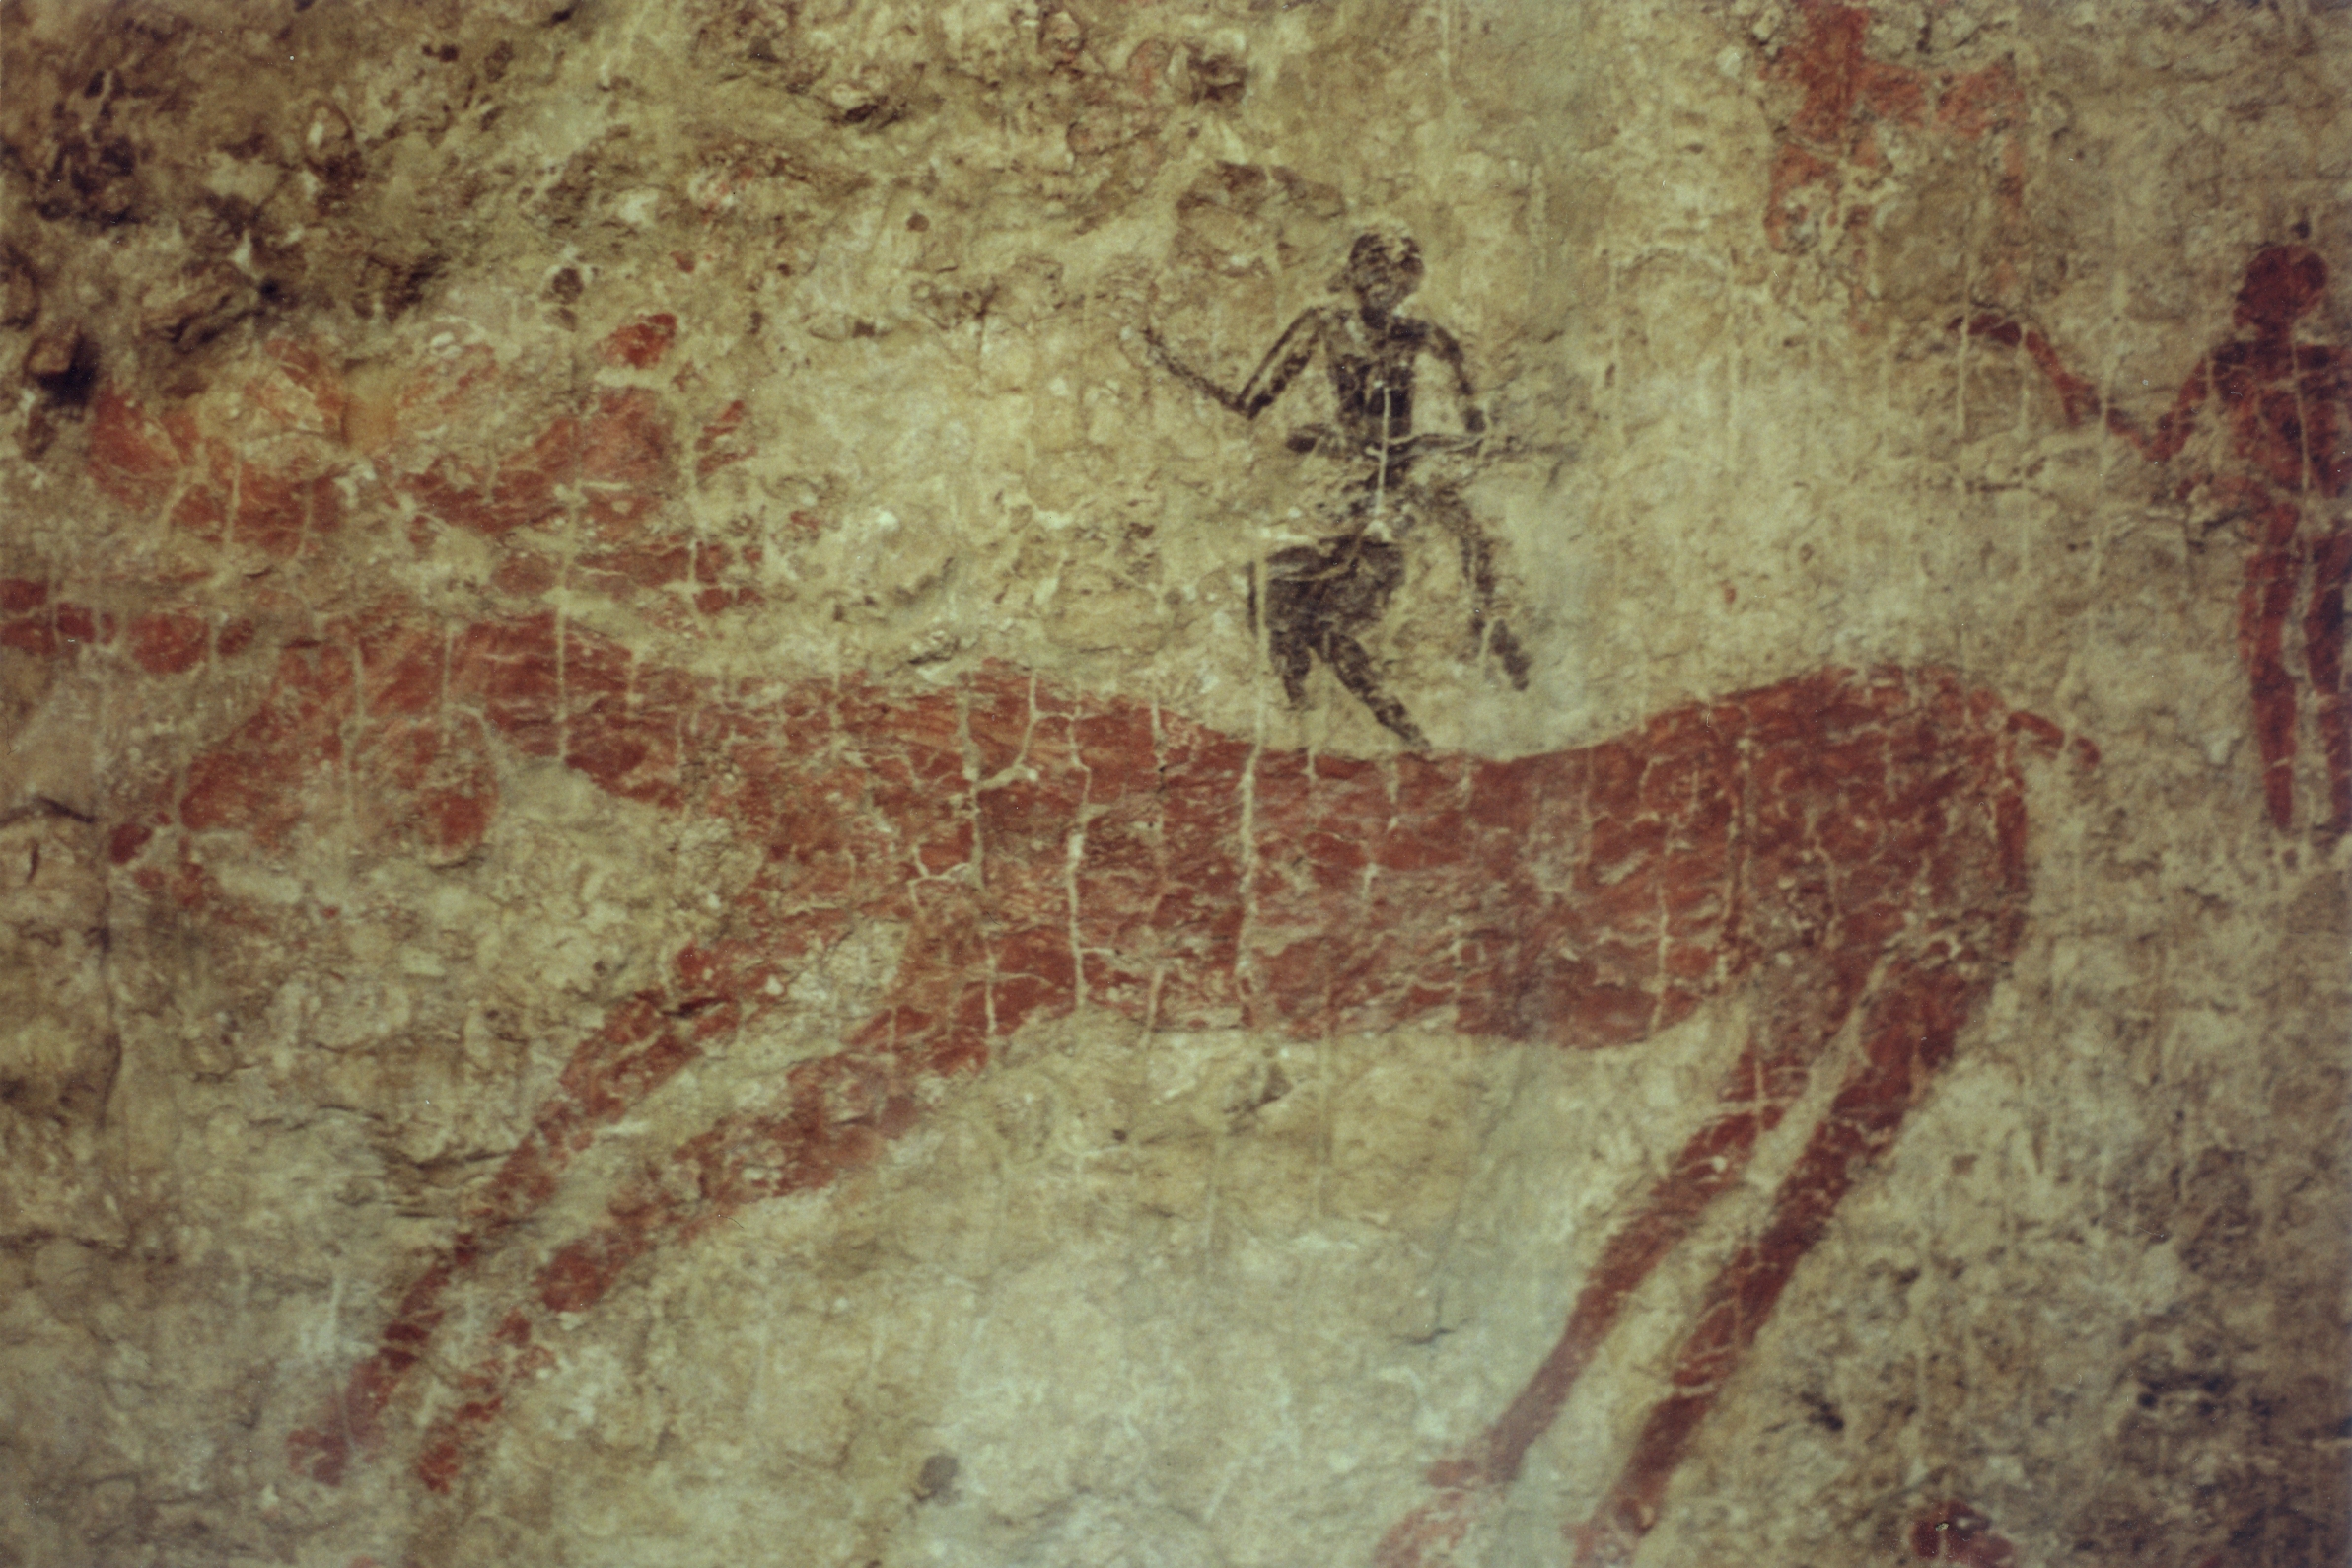 Peinture rupestre représentant une scène de chasse au&nbsp;sixième millénaire avant notre ère. Photo :&nbsp;Museum of Anatolian Civilizations, Ankara. © Zde, Wikimedia Commons, CC by-sa&nbsp;4.0